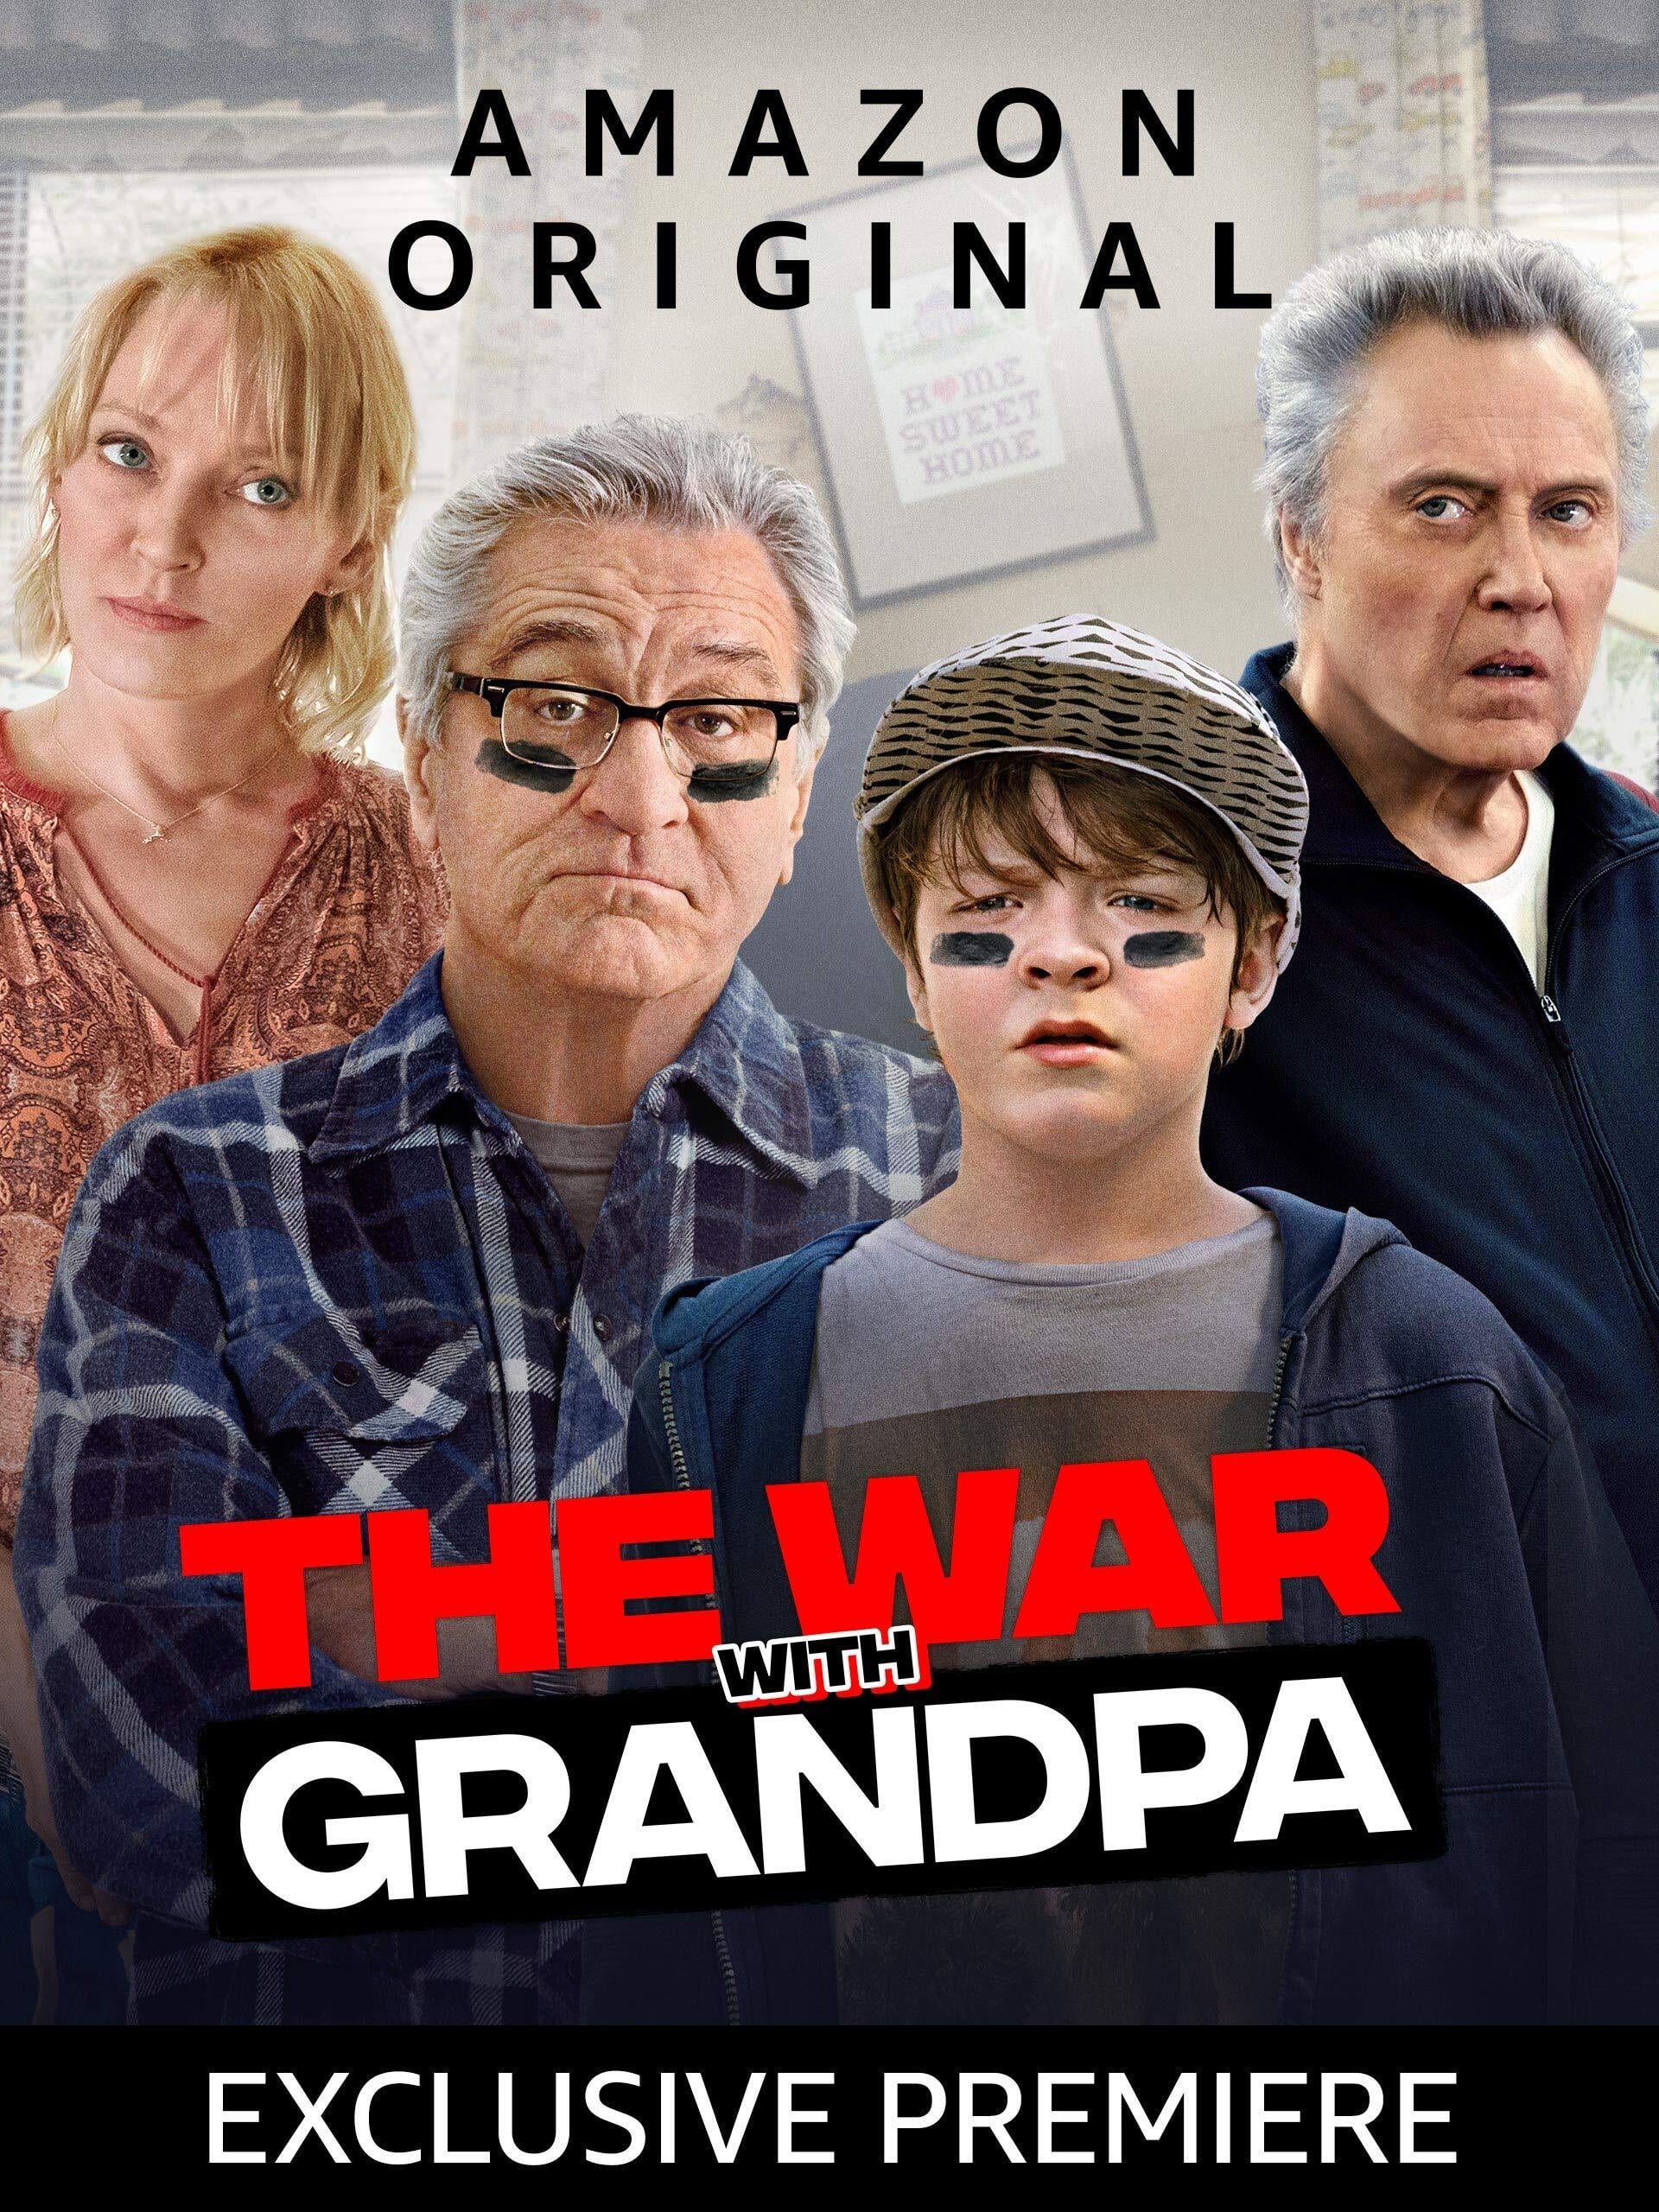 ดูหนังออนไลน์ The War with Grandpa ถ้าปู่แน่ ก็มาดิครับ